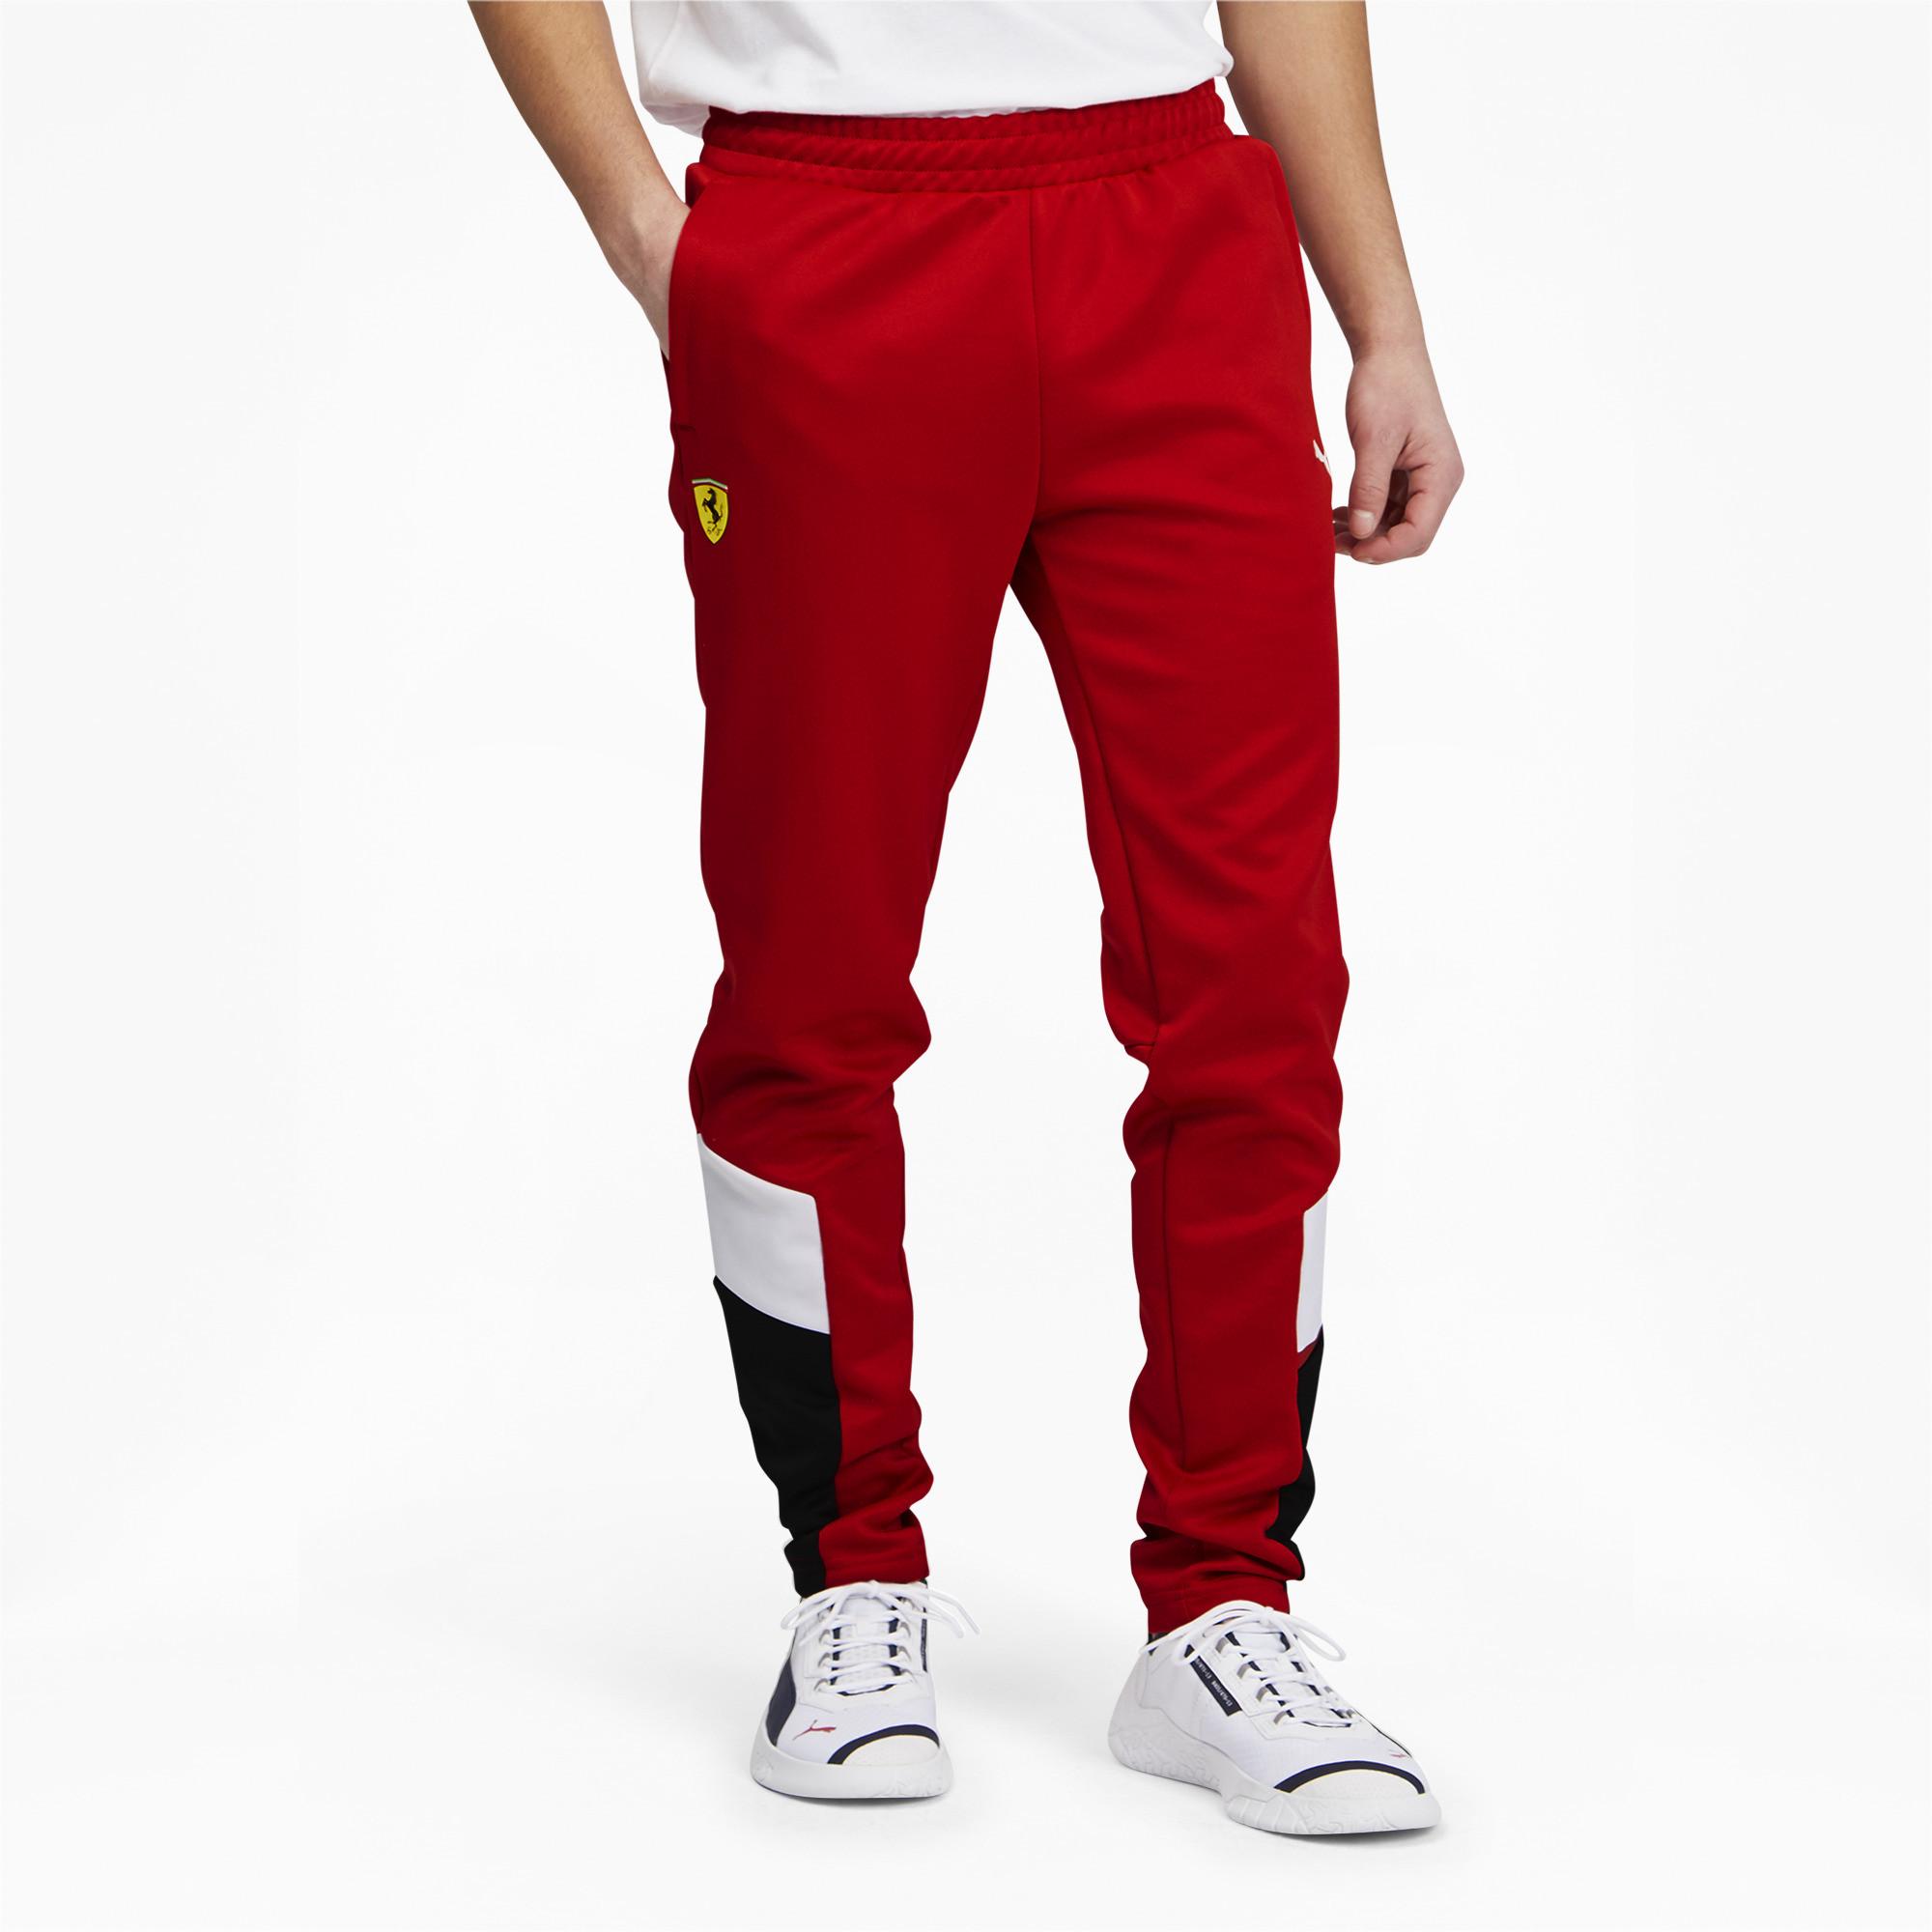 PUMA Scuderia Ferrari Race Mcs Track Pants in Red for Men - Lyst